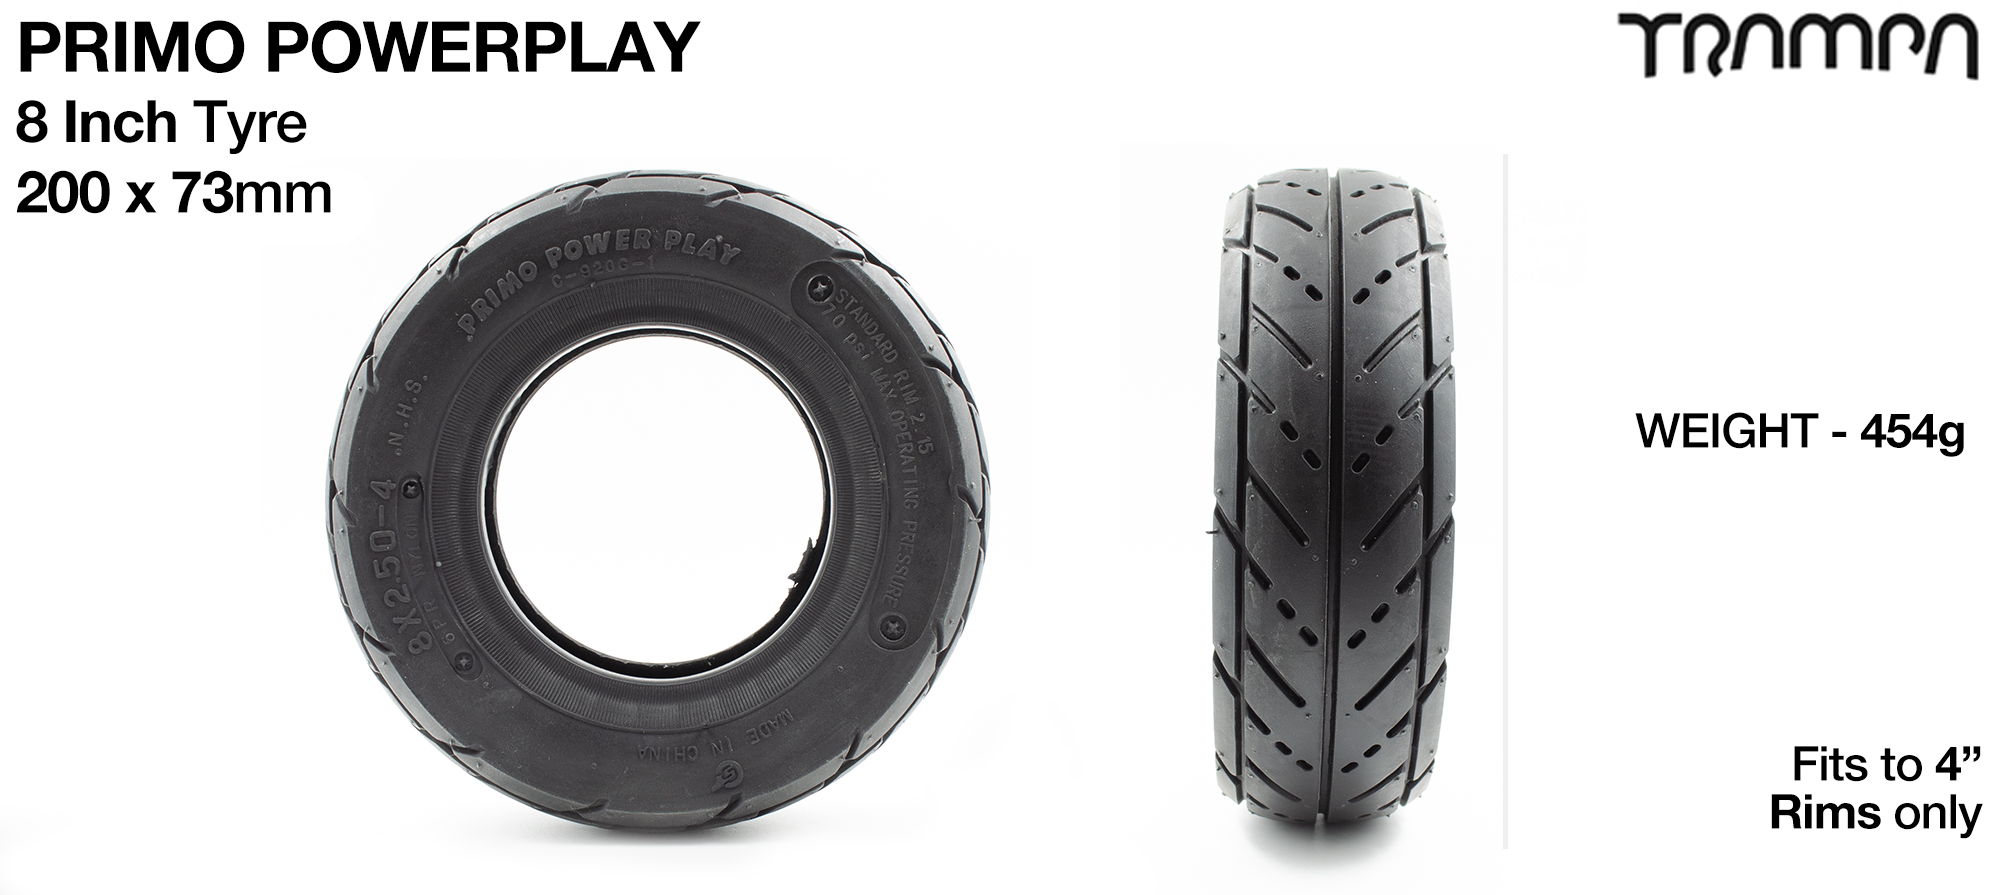 8 x 2.5 Inch POWERPLAY Tyre n Tube (+£20)